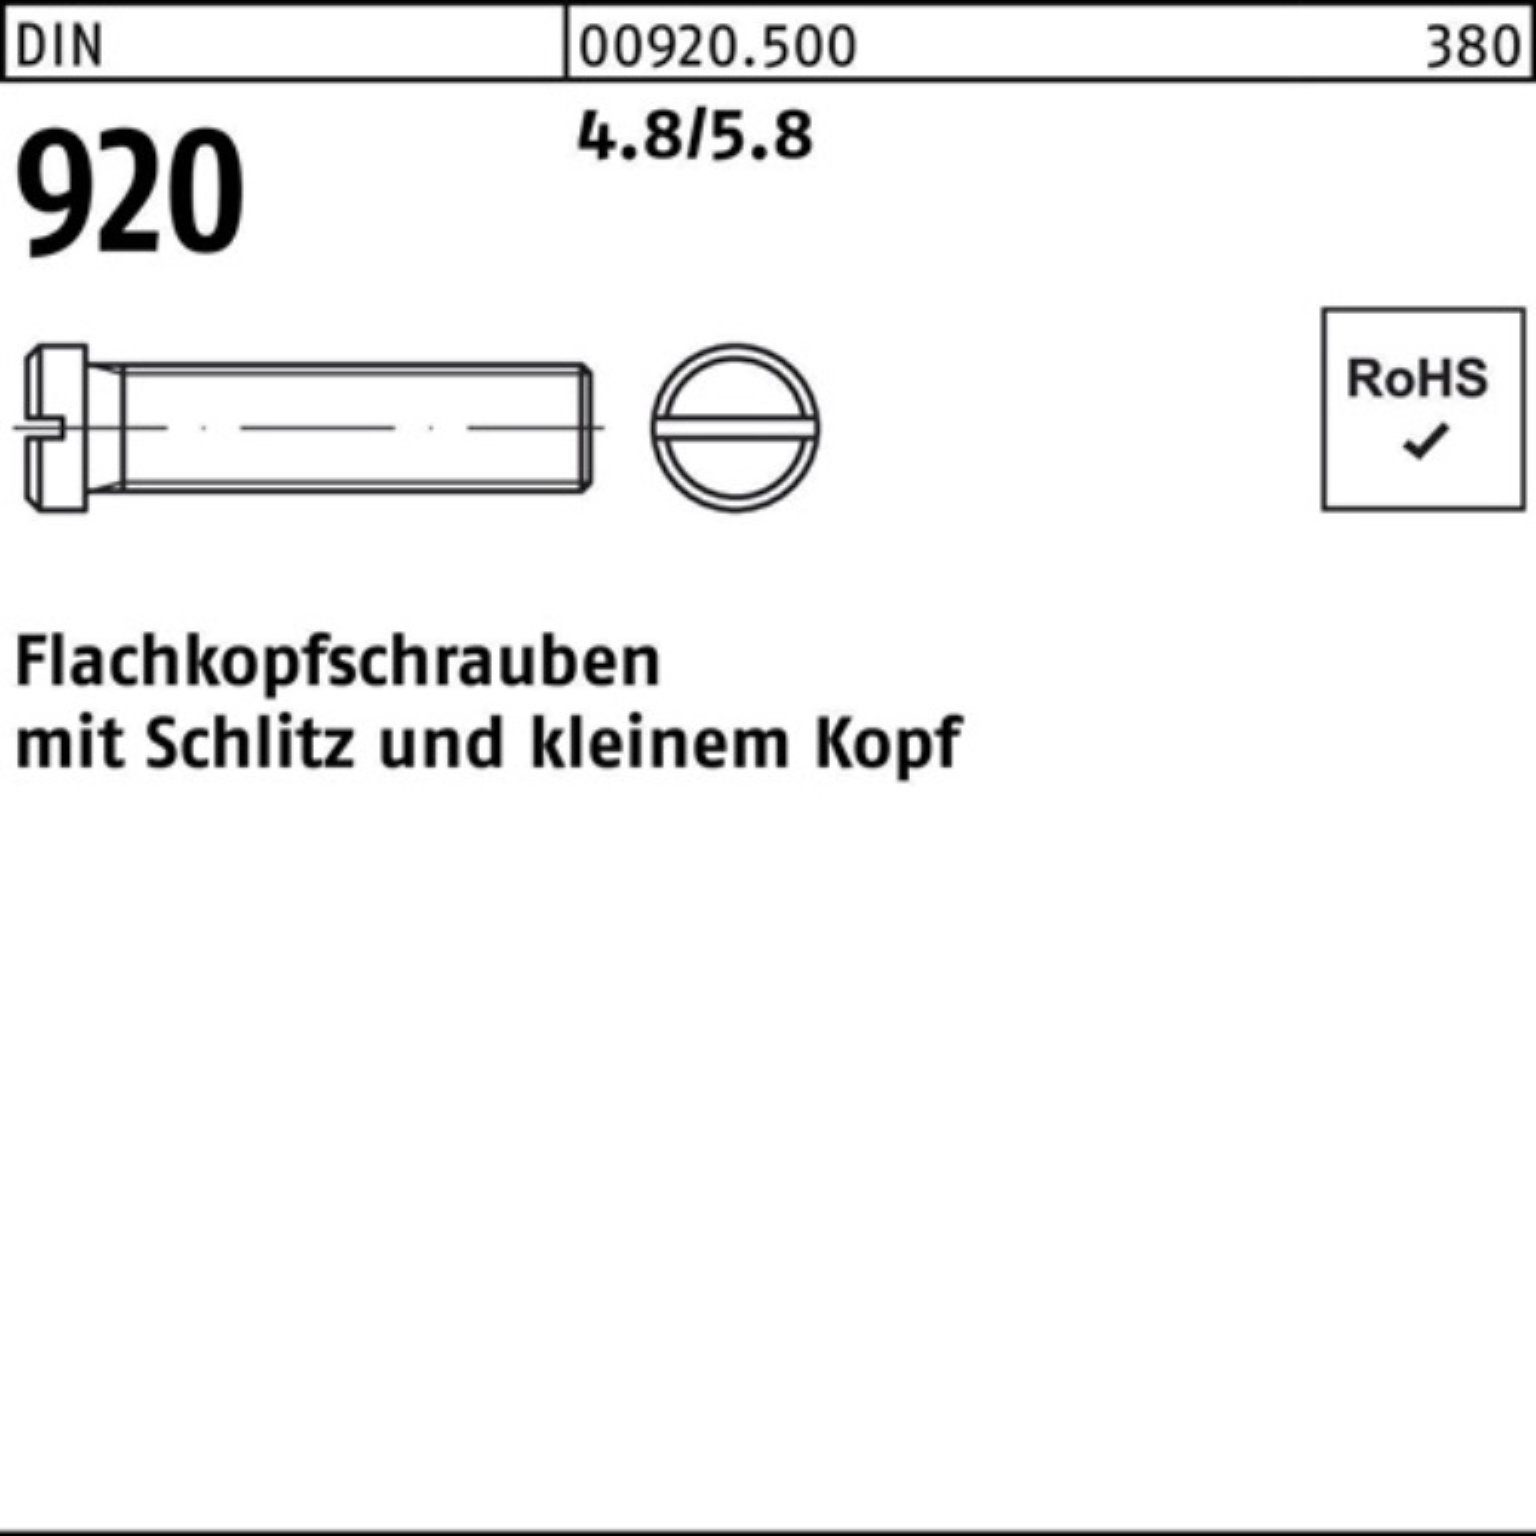 M3x 100 DIN Stück 10 Pack Schraube Reyher Schlitz 100er 920 Flachkopfschraube 4.8/5.8